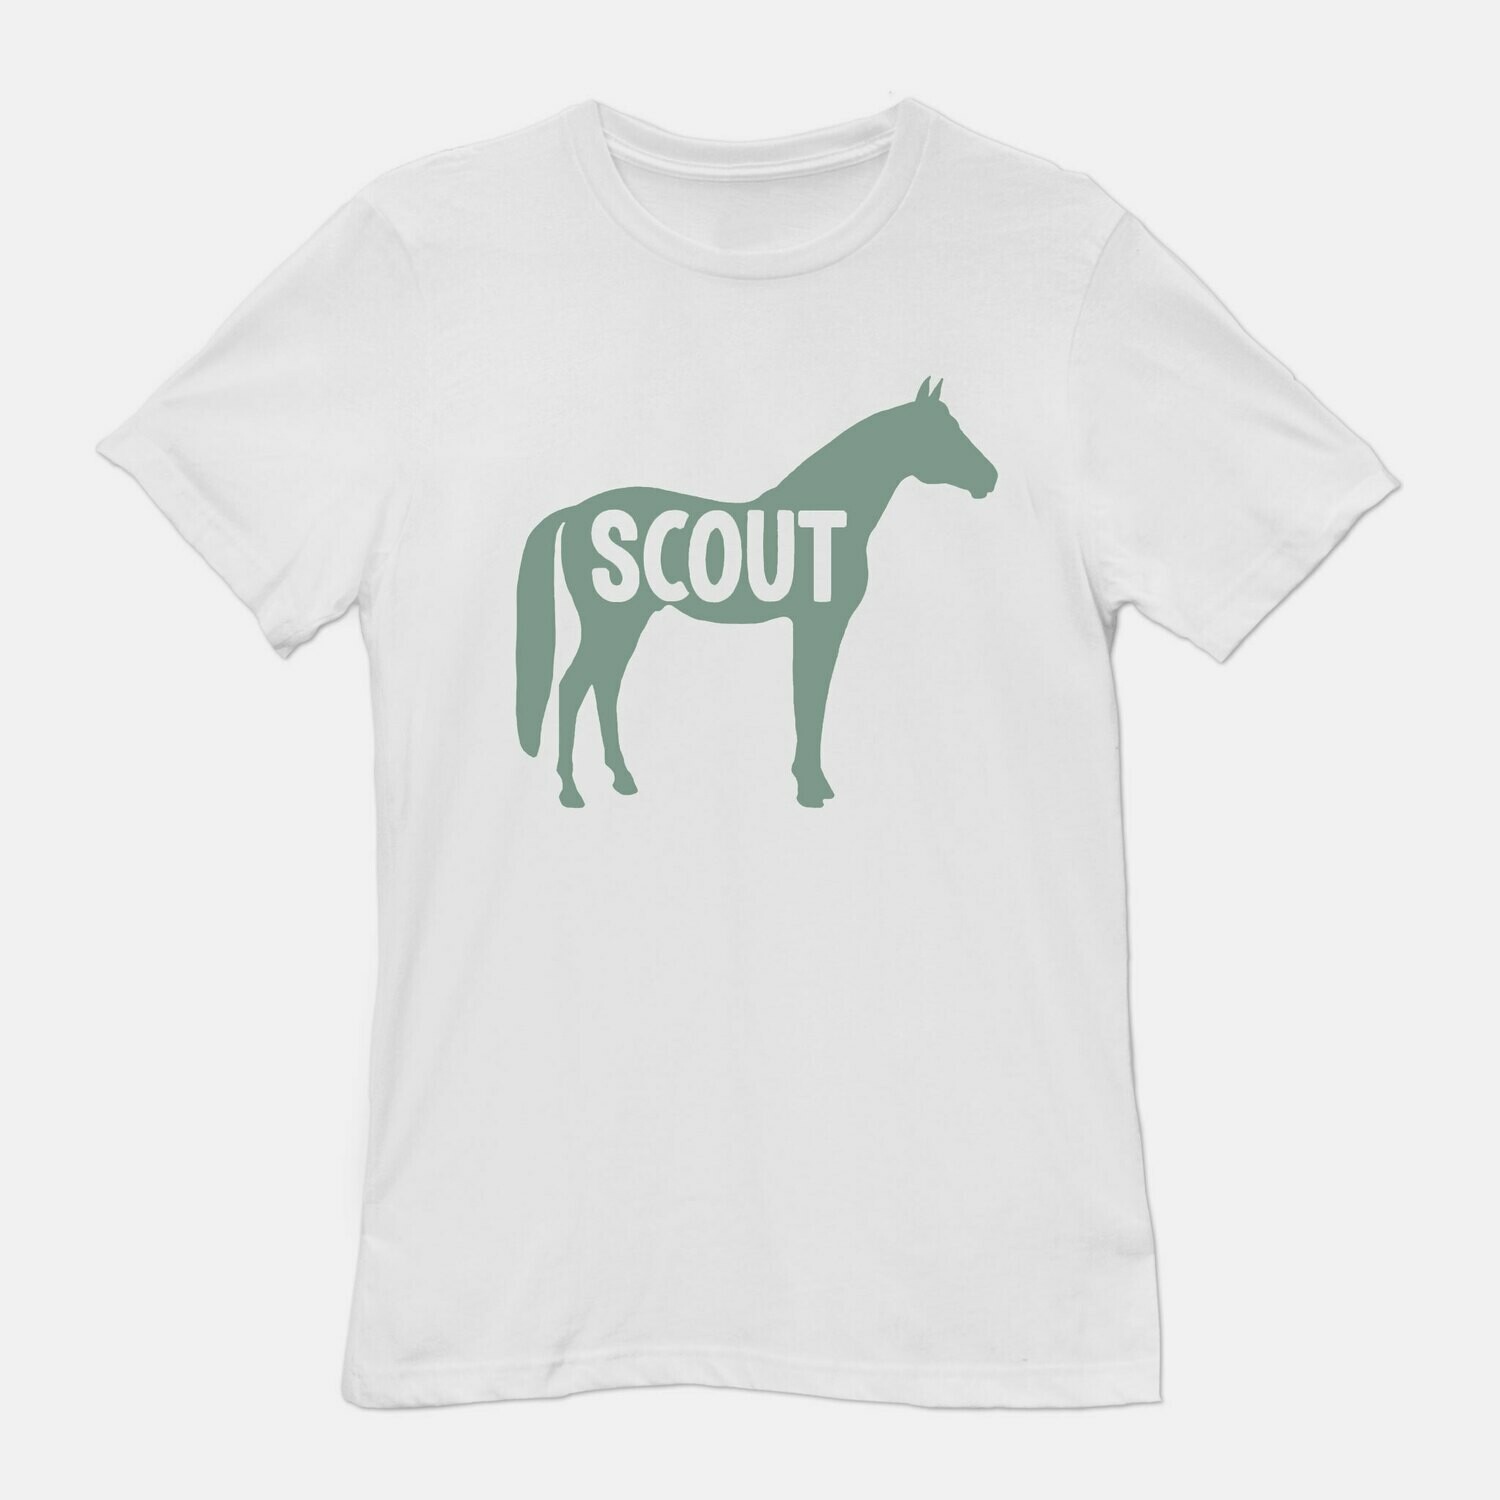 Custom Name Horse White T-shirt tee